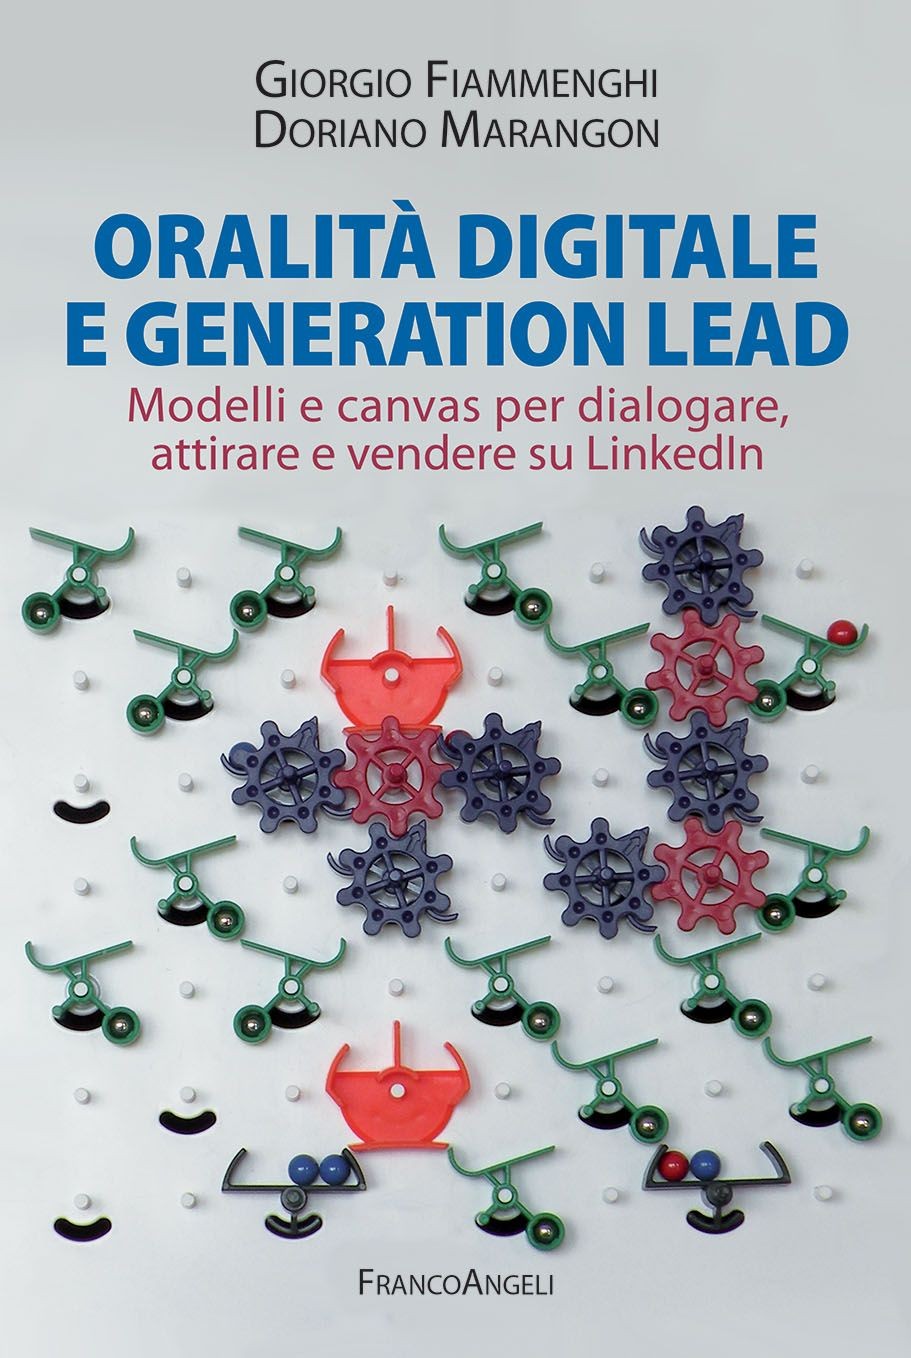 Oralità digitale e generation lead - Librerie.coop